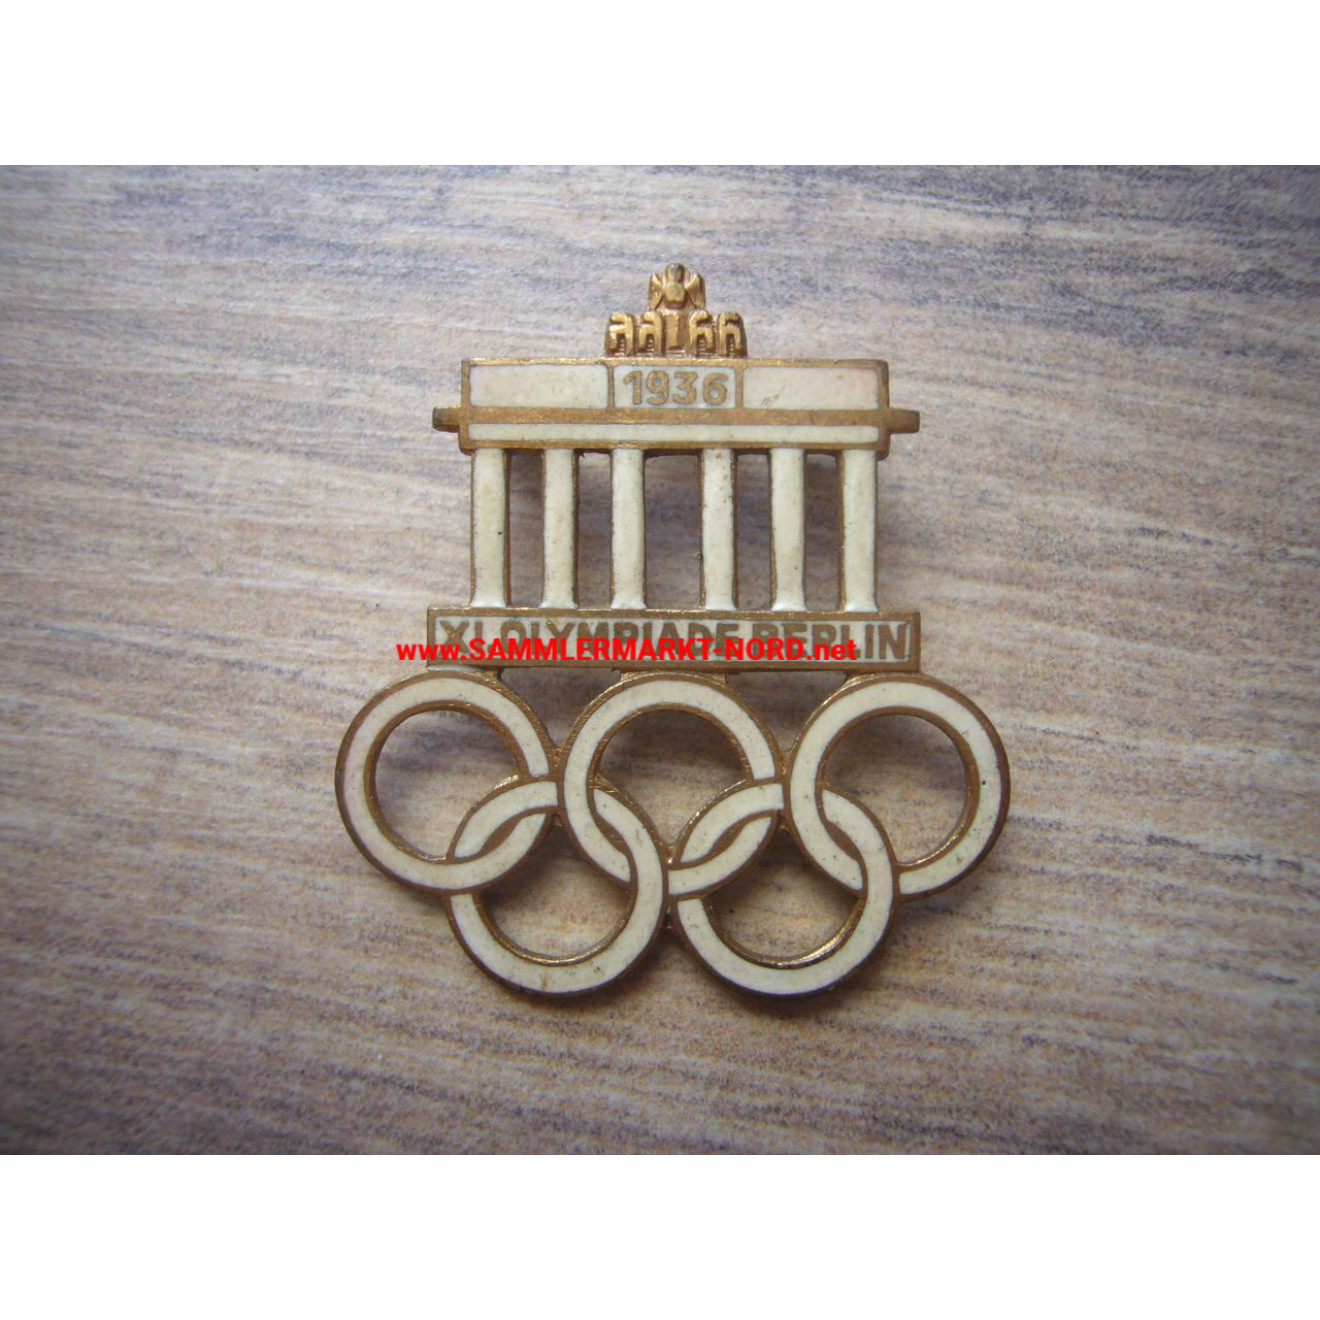 XI. Olympiade Berlin 1936 - Abzeichen für Besucher